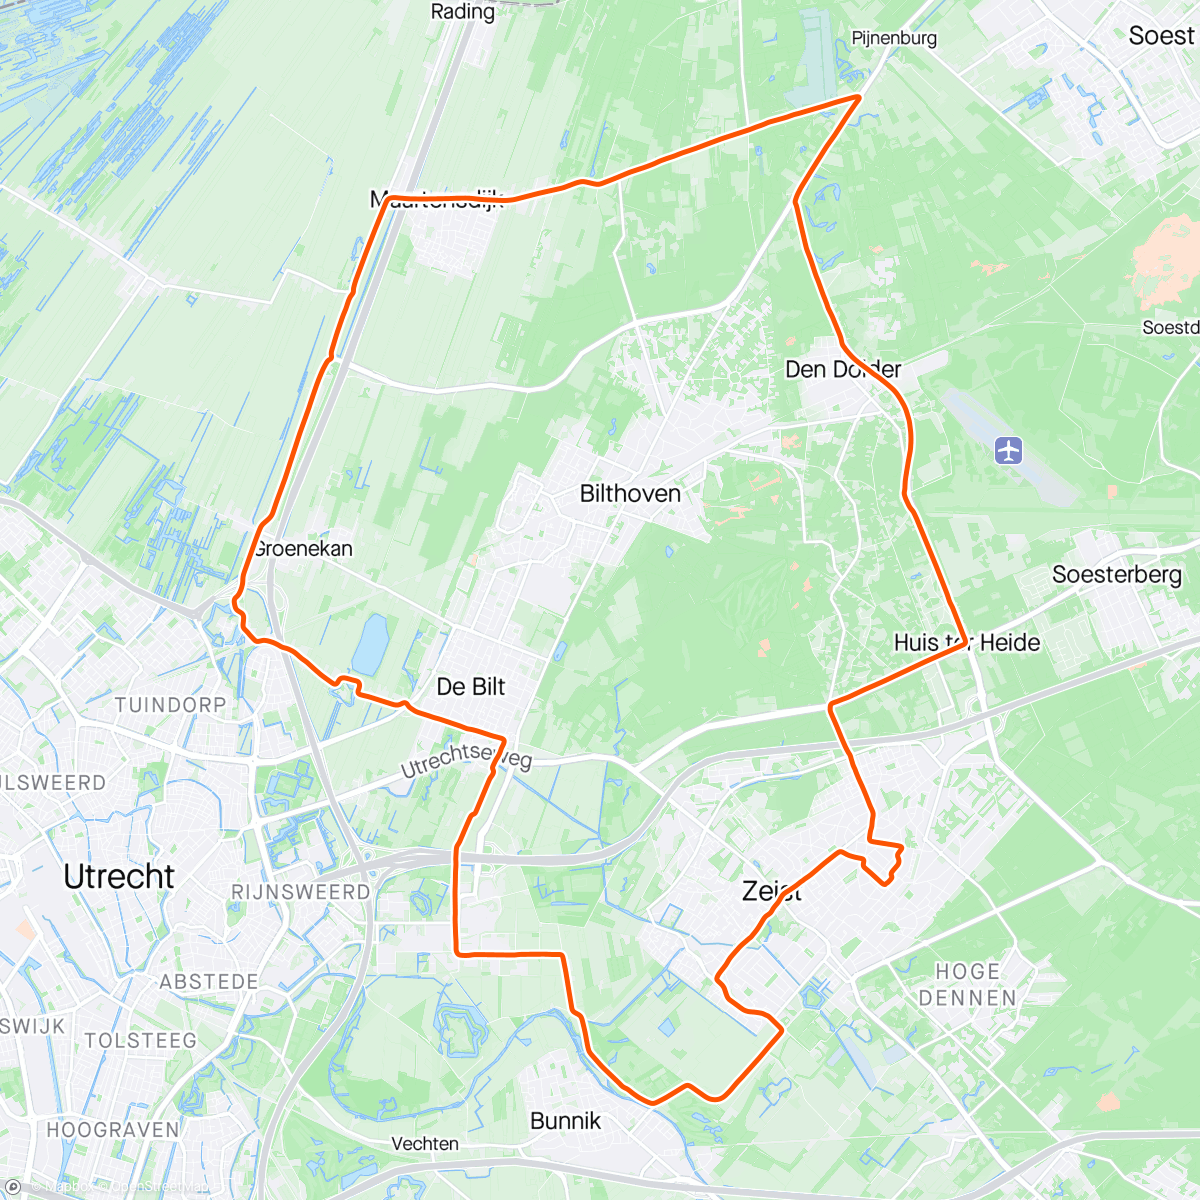 「ROUVY - Hersteltraining」活動的地圖